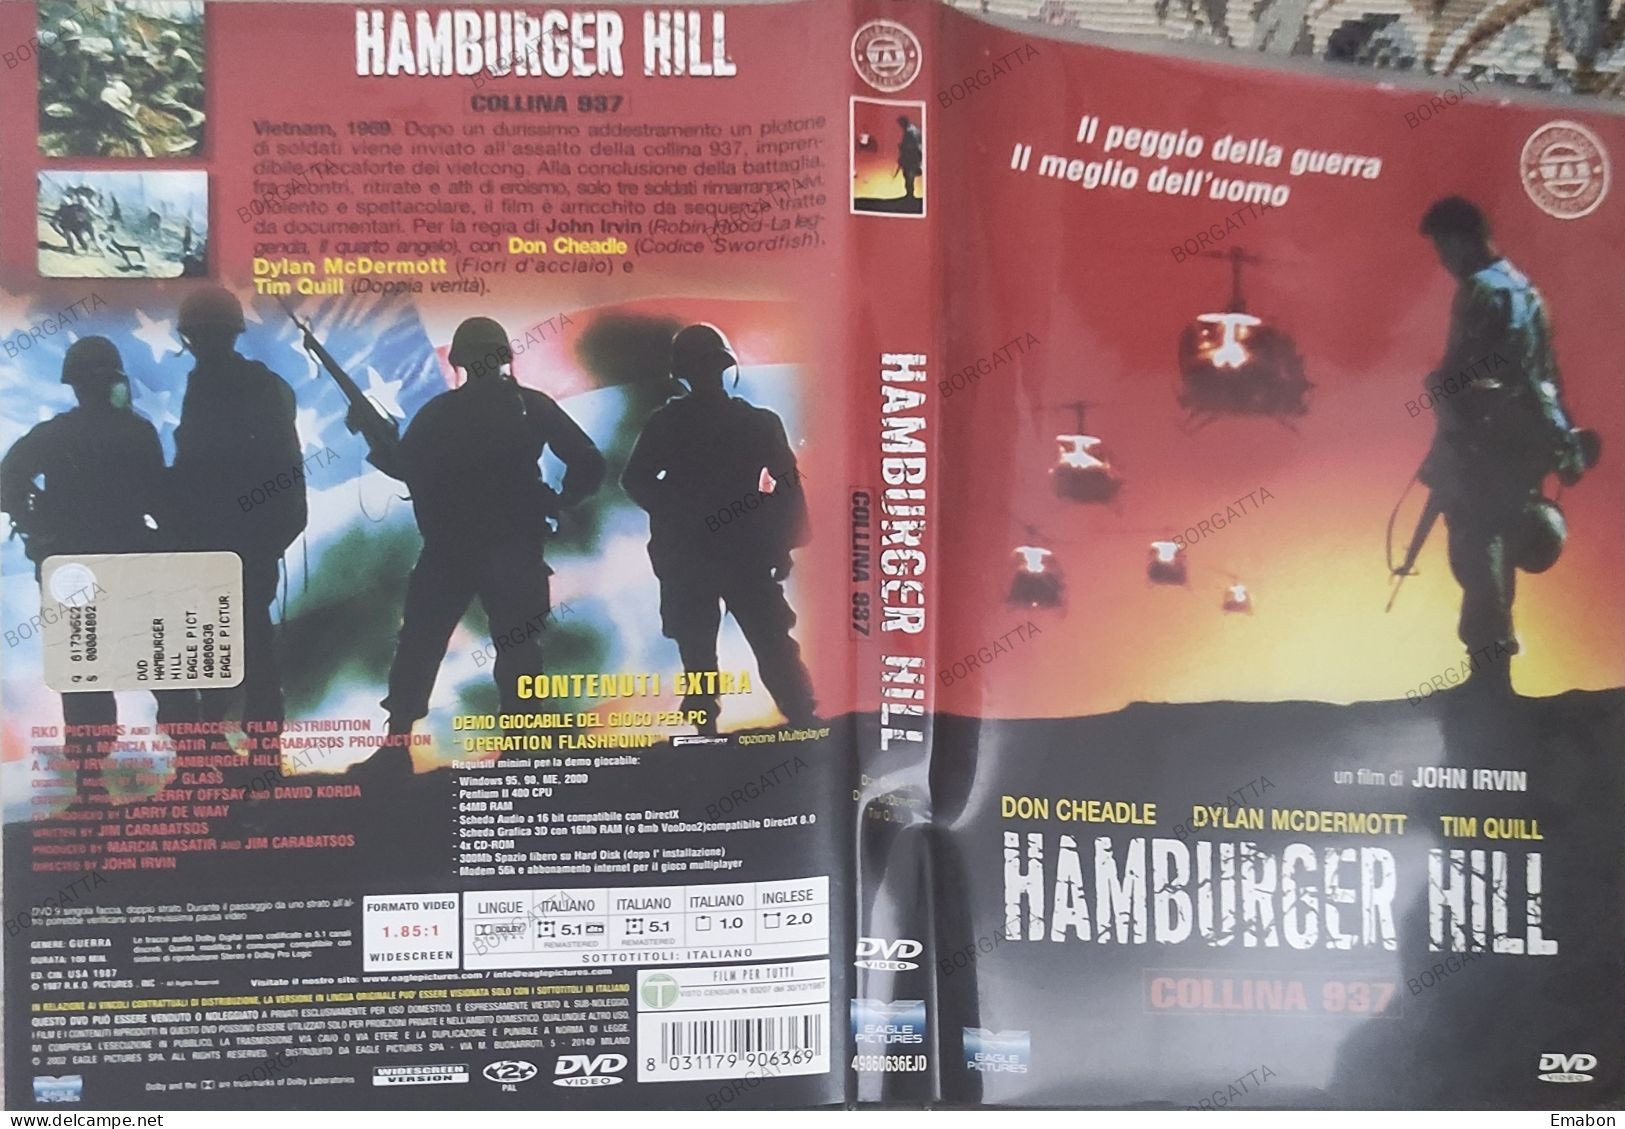 BORGATTA - GUERRA - Dvd  " HAMBURGER HILL COLLINA 937 " JOHN IRVIN - PAL 2 - EAGLE 2002 -  USATO In Buono Stato - Drama